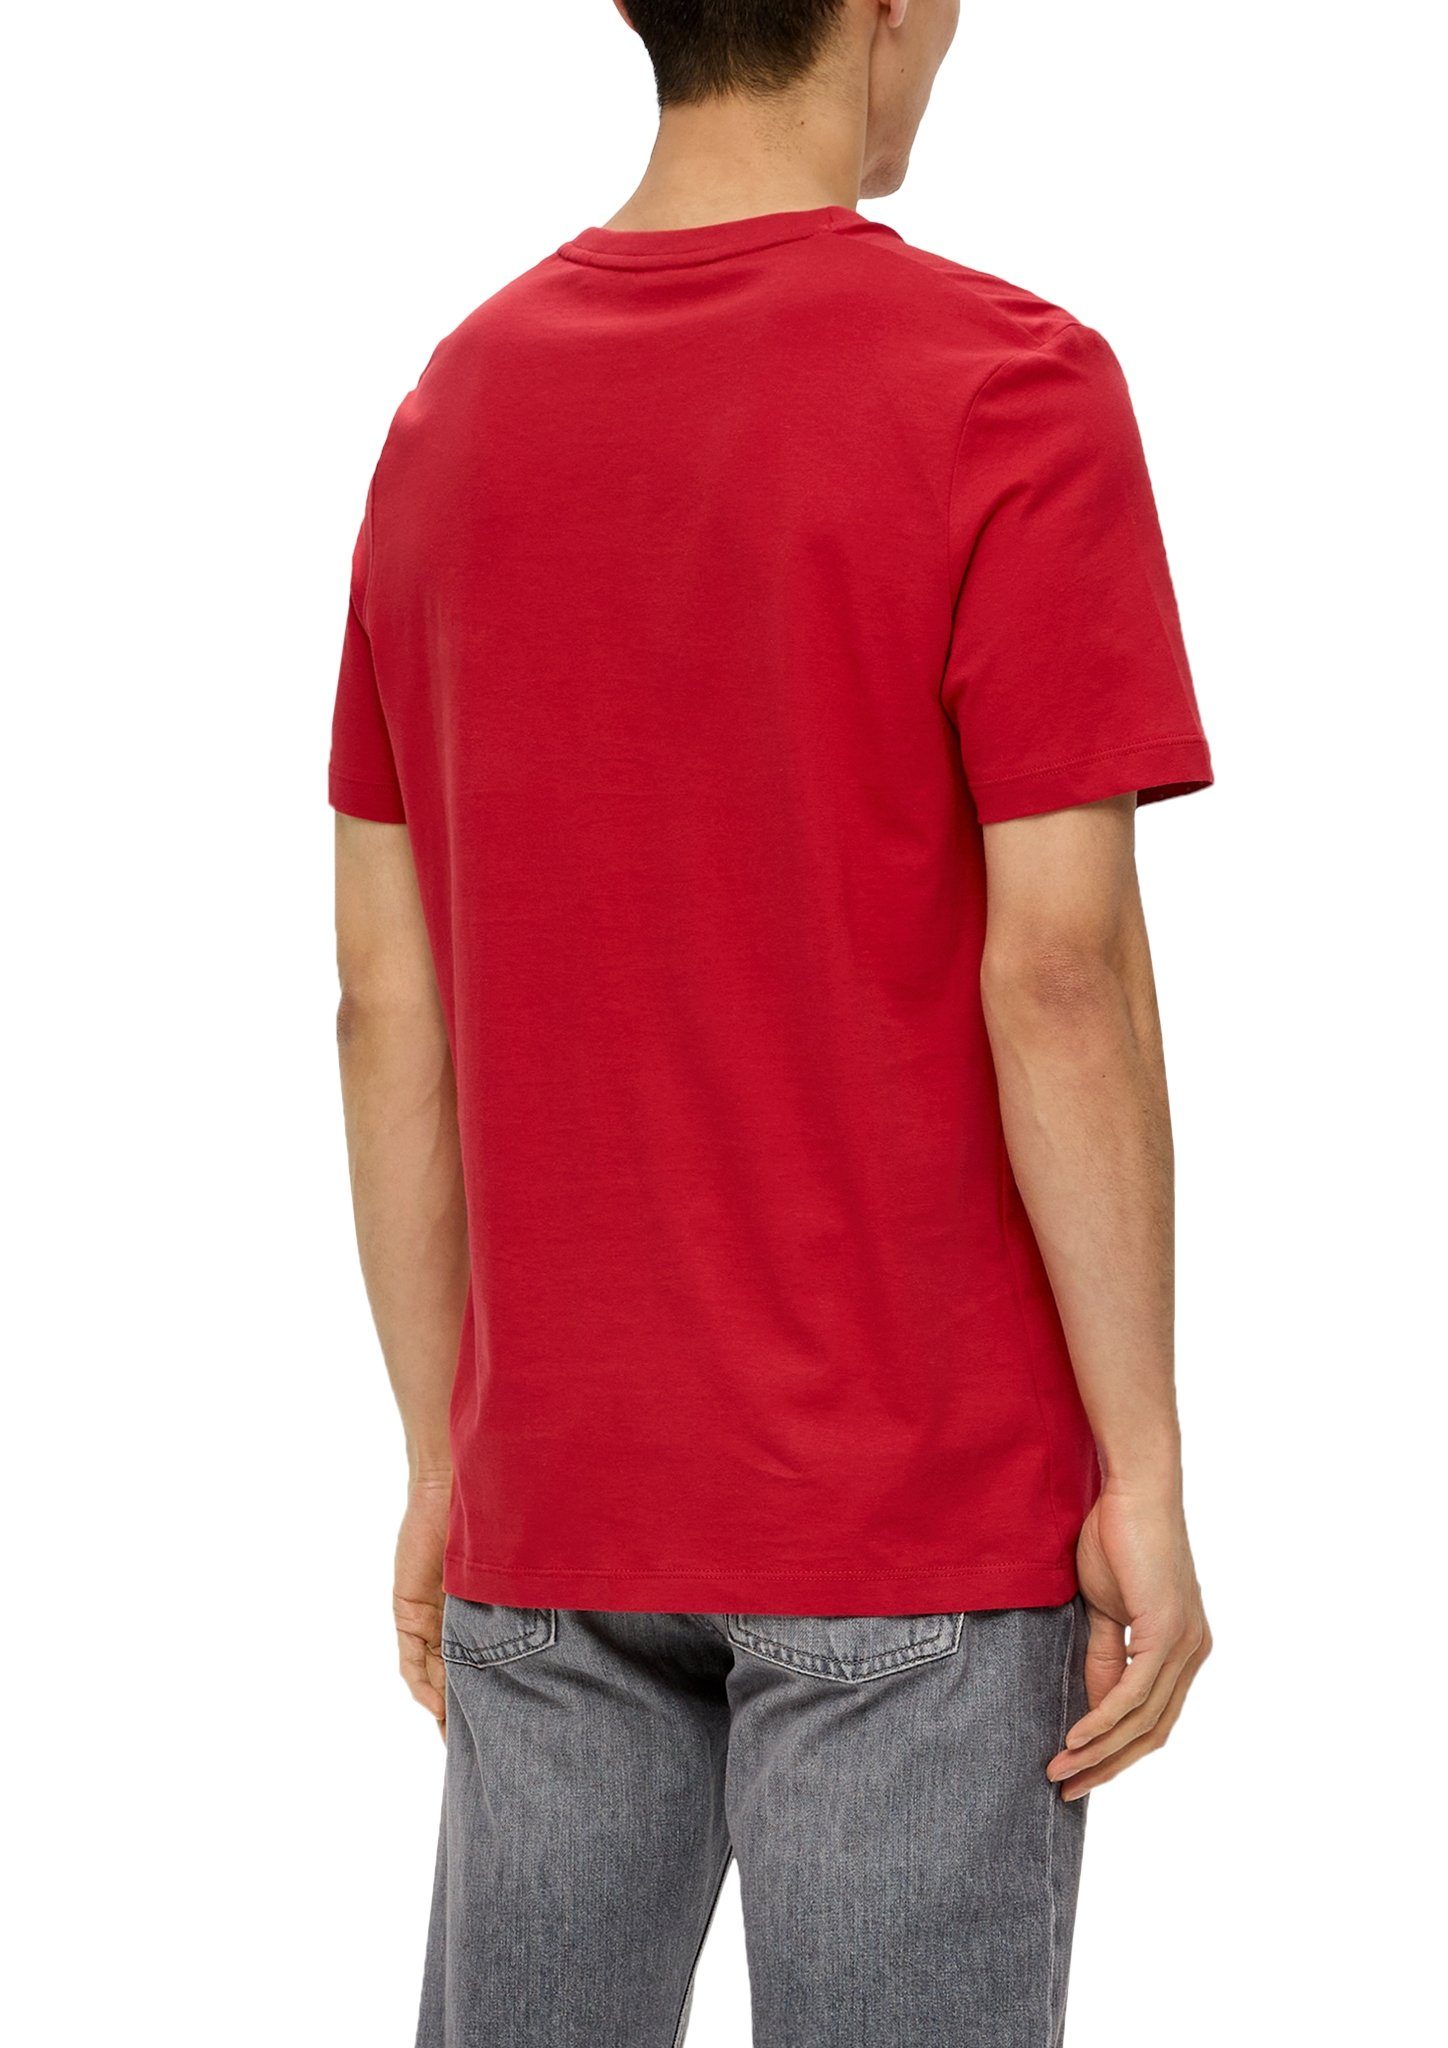 auf Brust mit Schriftzug s.Oliver der red T-Shirt